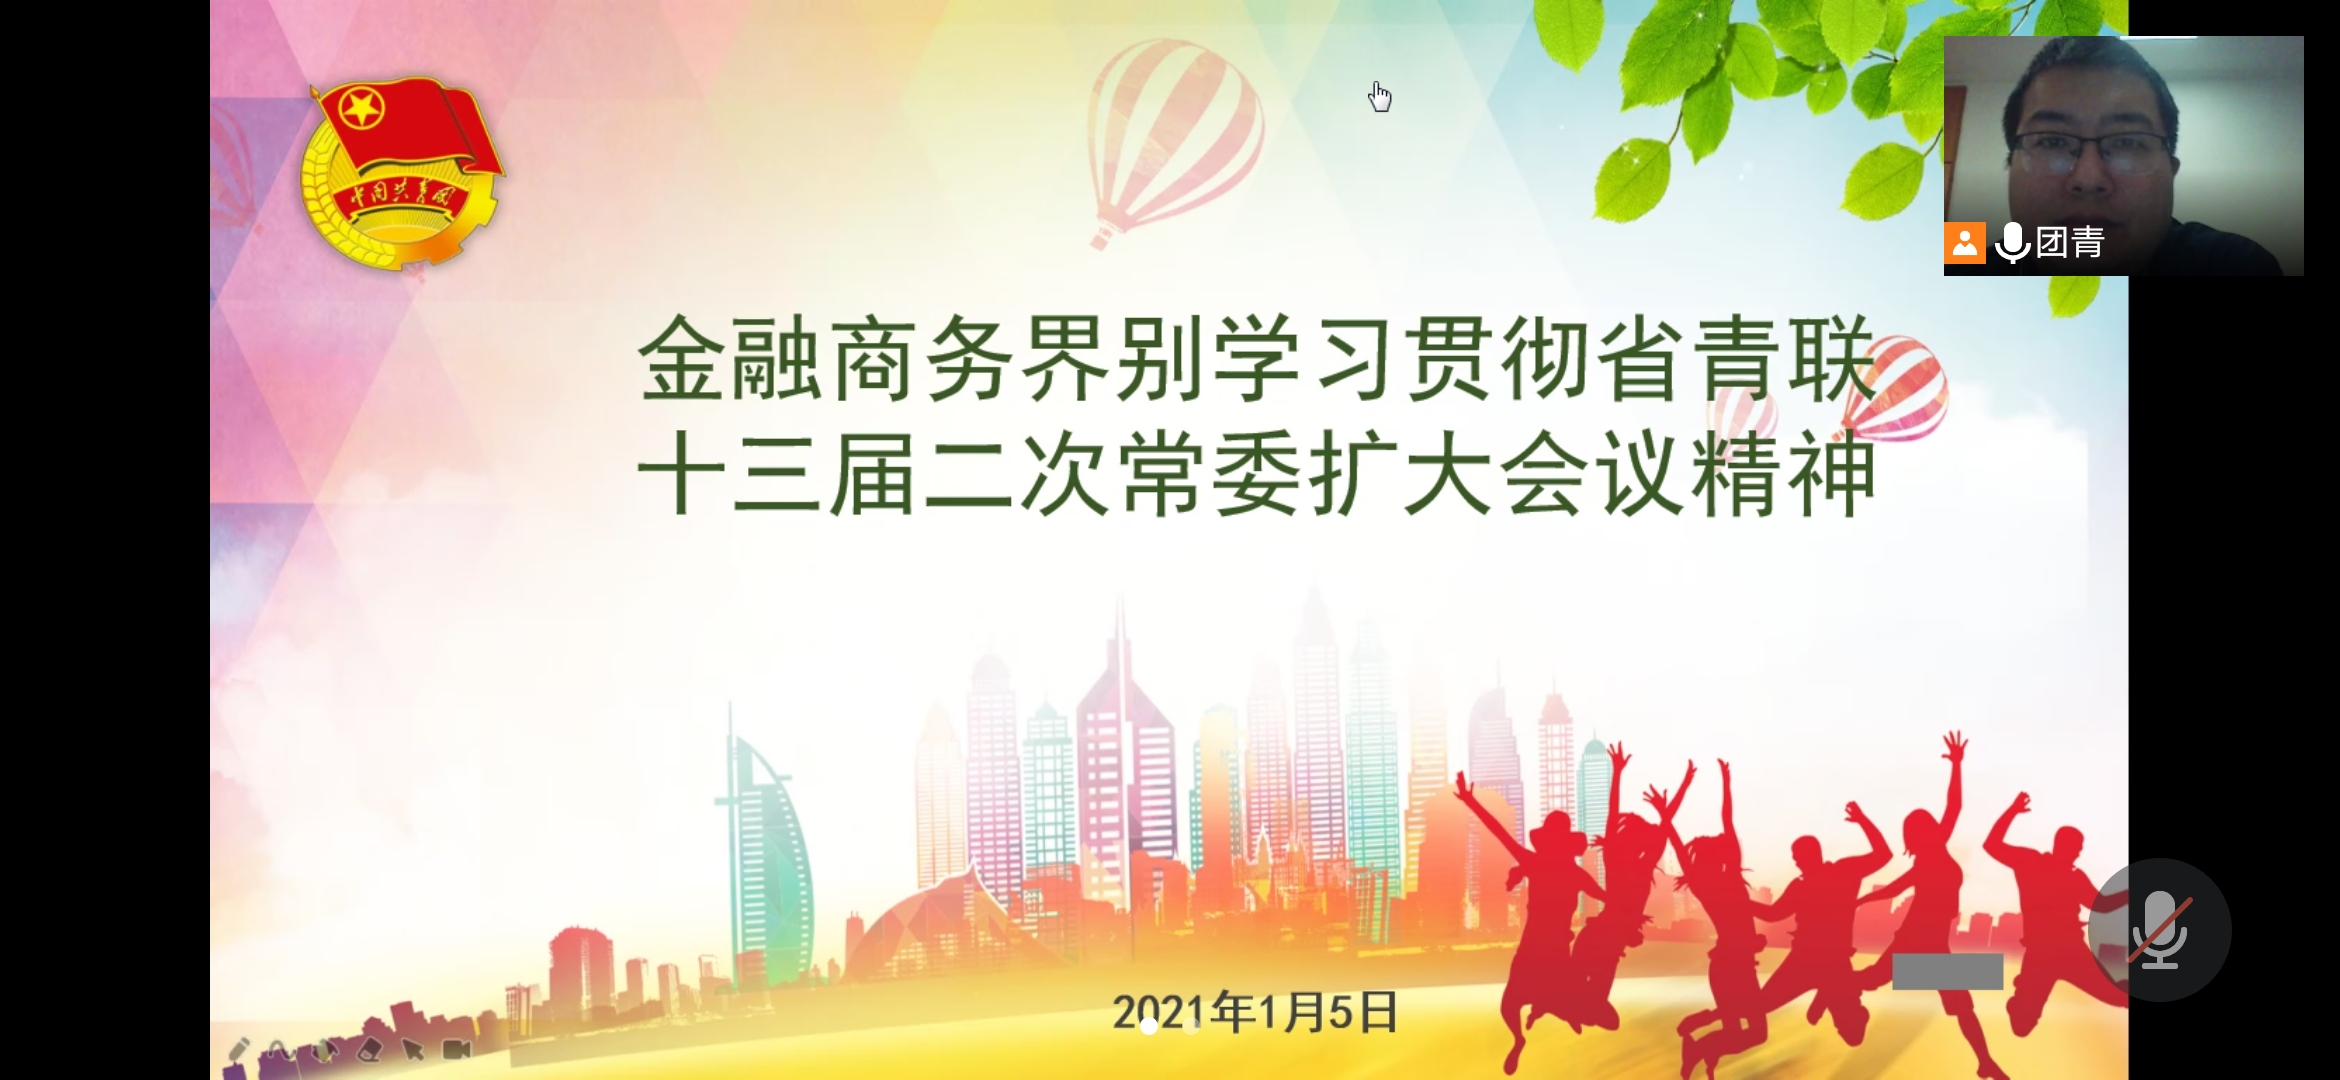 省青联金融商务界别召开2021年工作会议